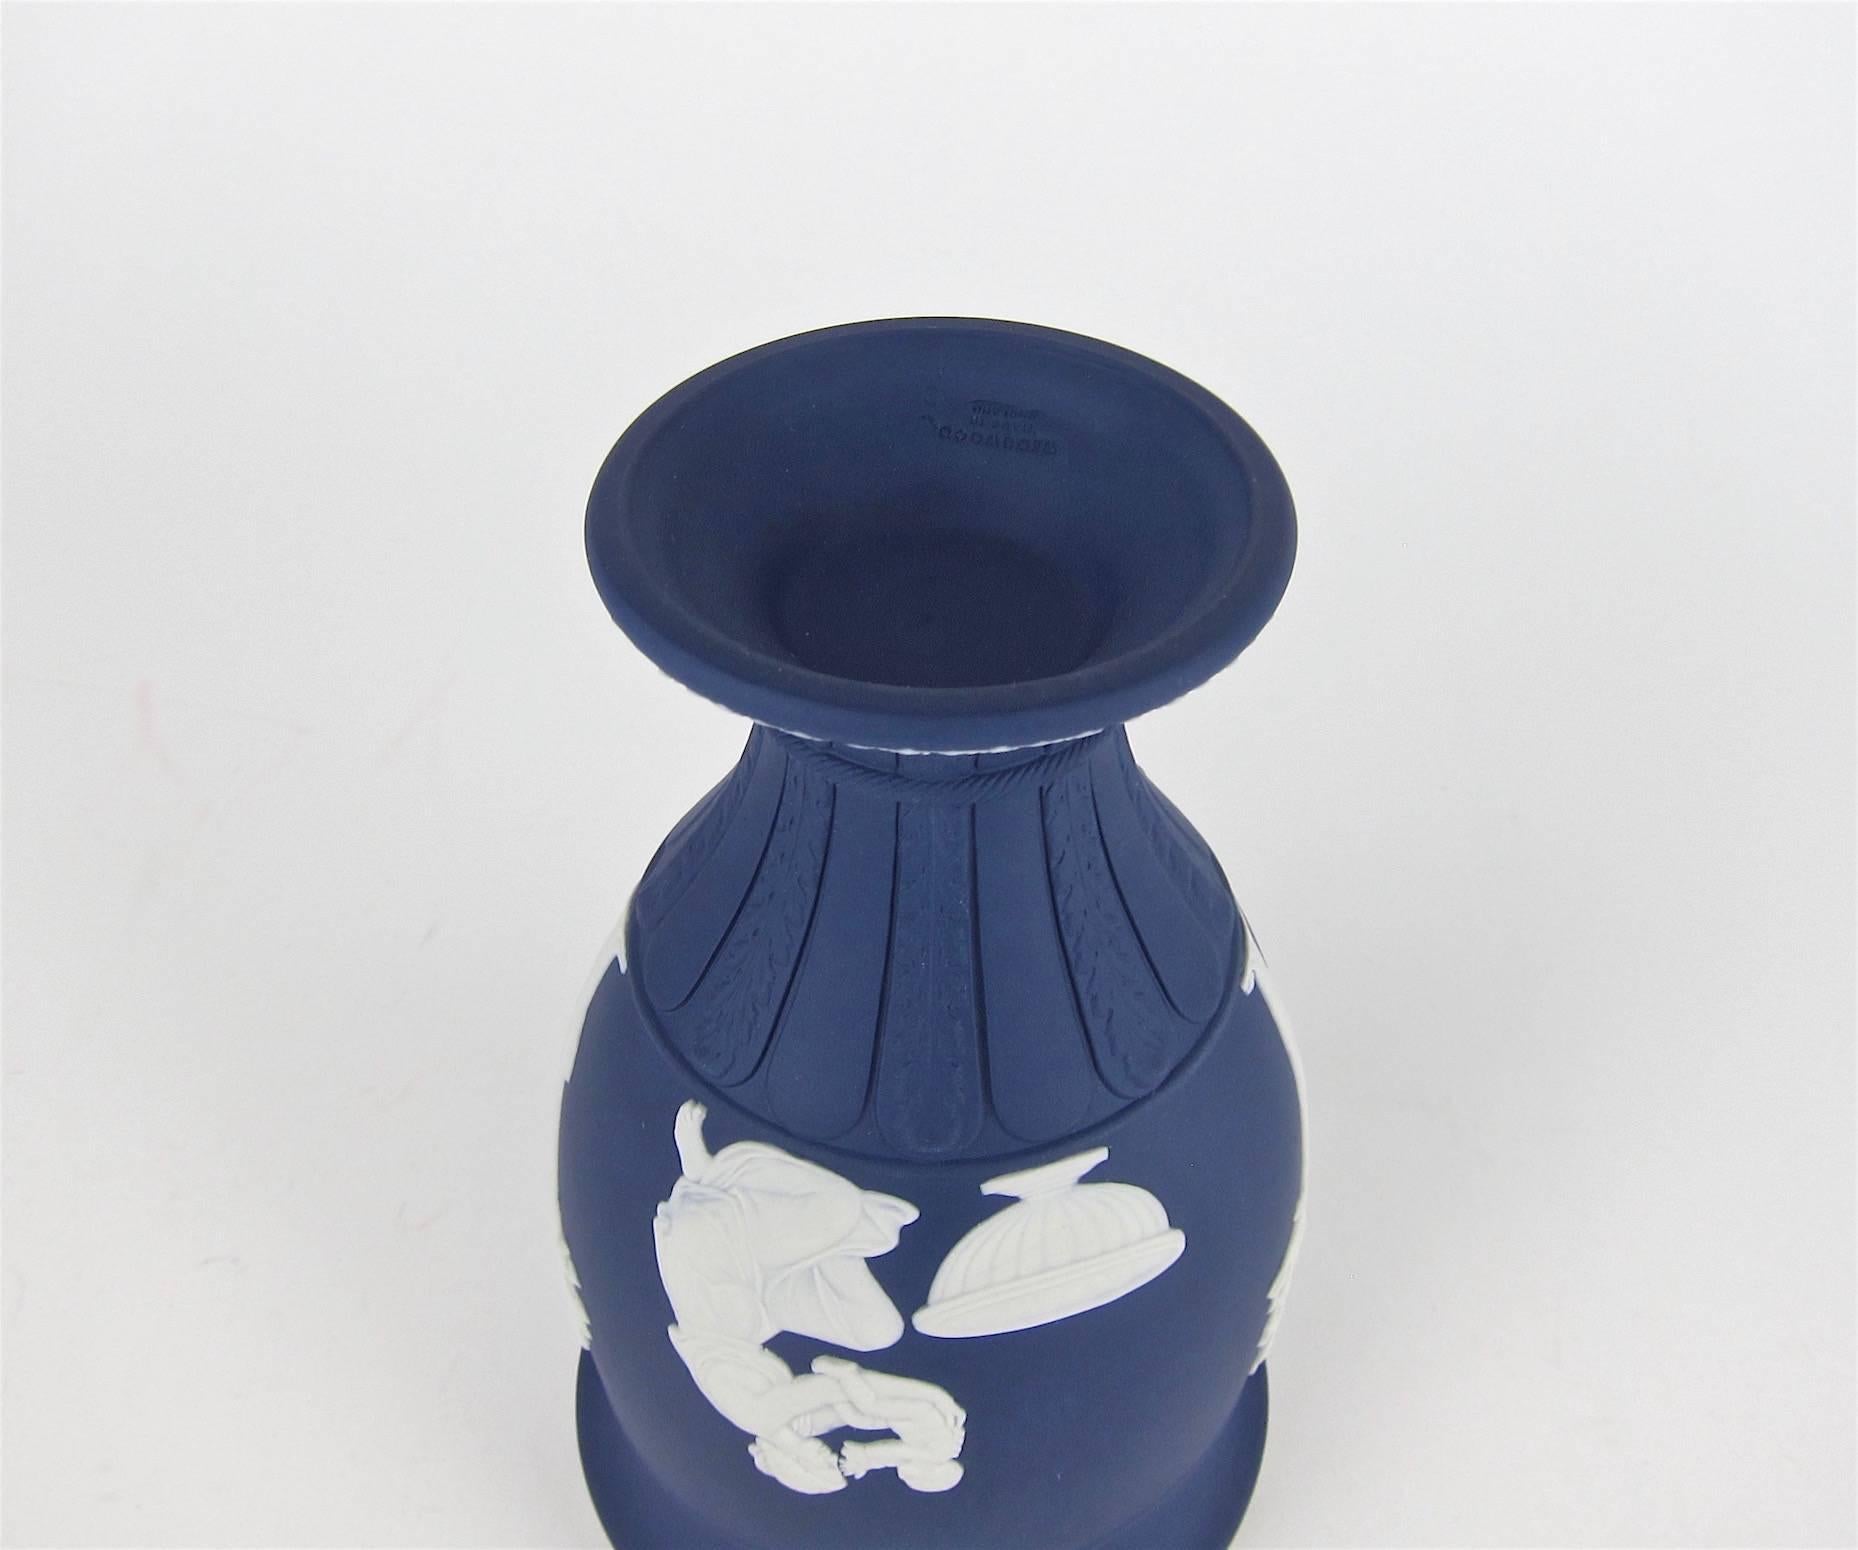 Wedgwood Classical Covered Urn in White on Portland Blue Jasper Ware 1